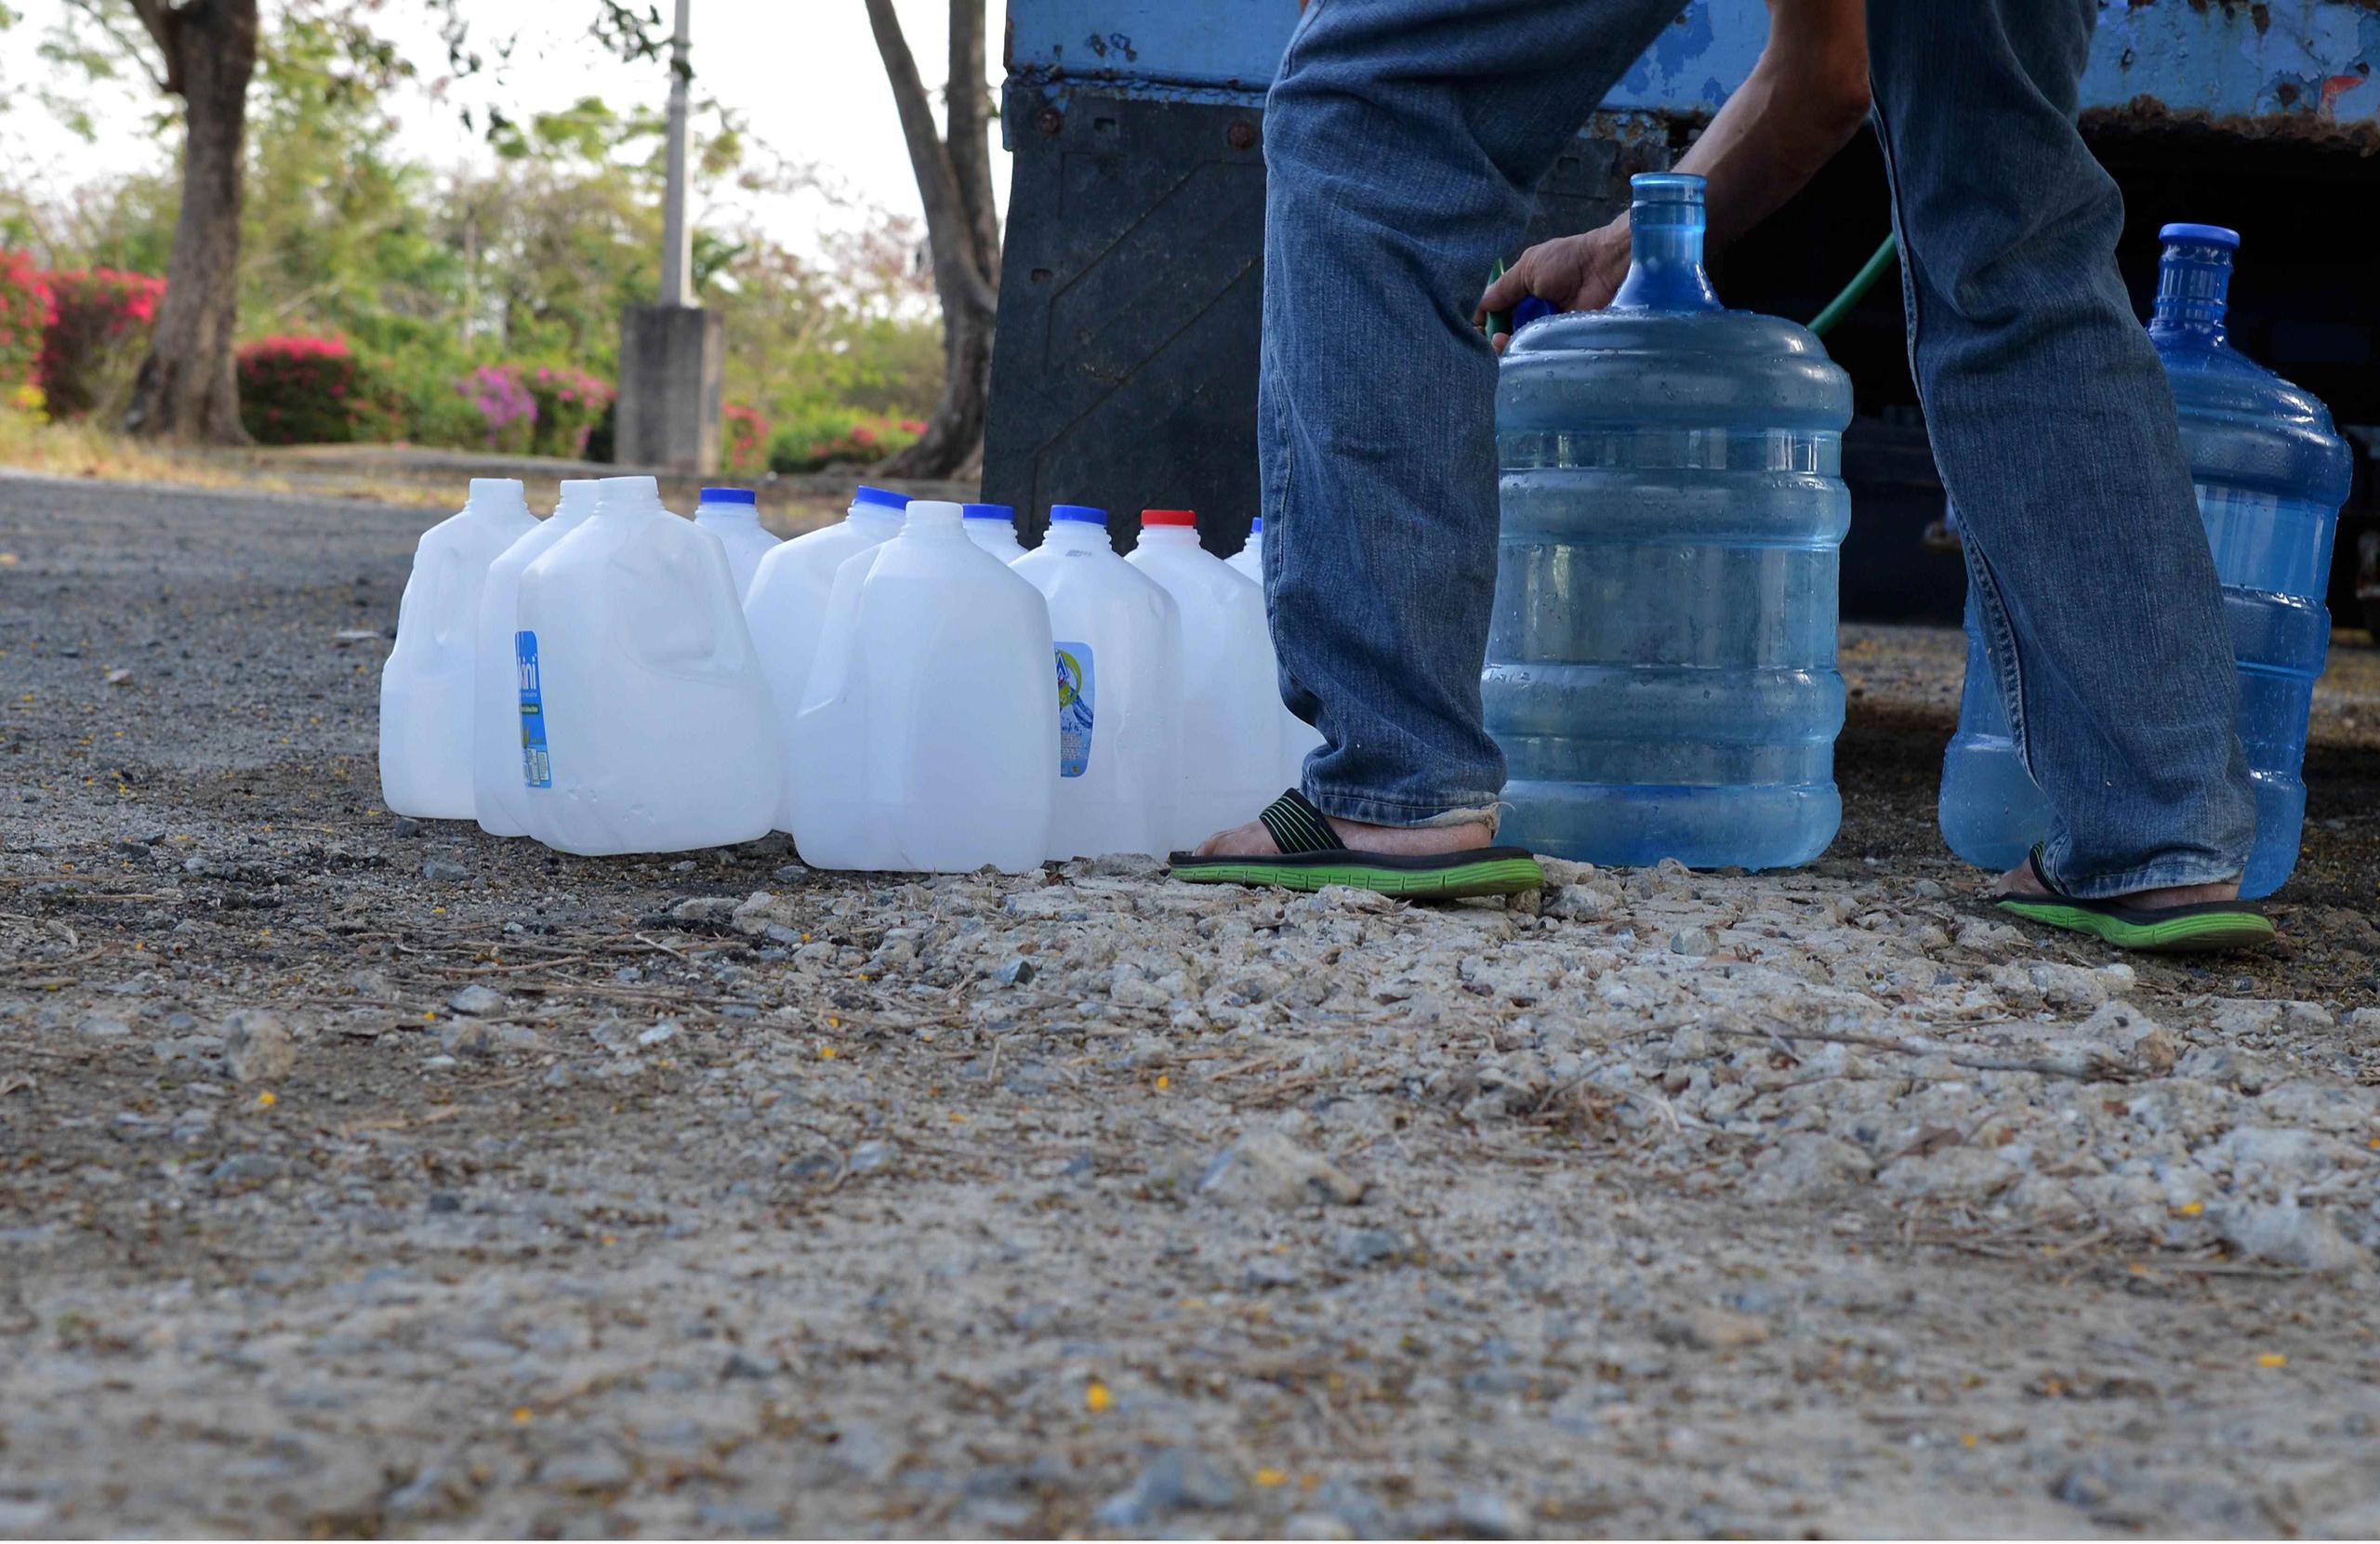 Contrario a pasadas experiencias de racionamiento, la mayoría de los puntos preparados para distribuir agua en las zonas perjudicadas por la sequía están desiertos.